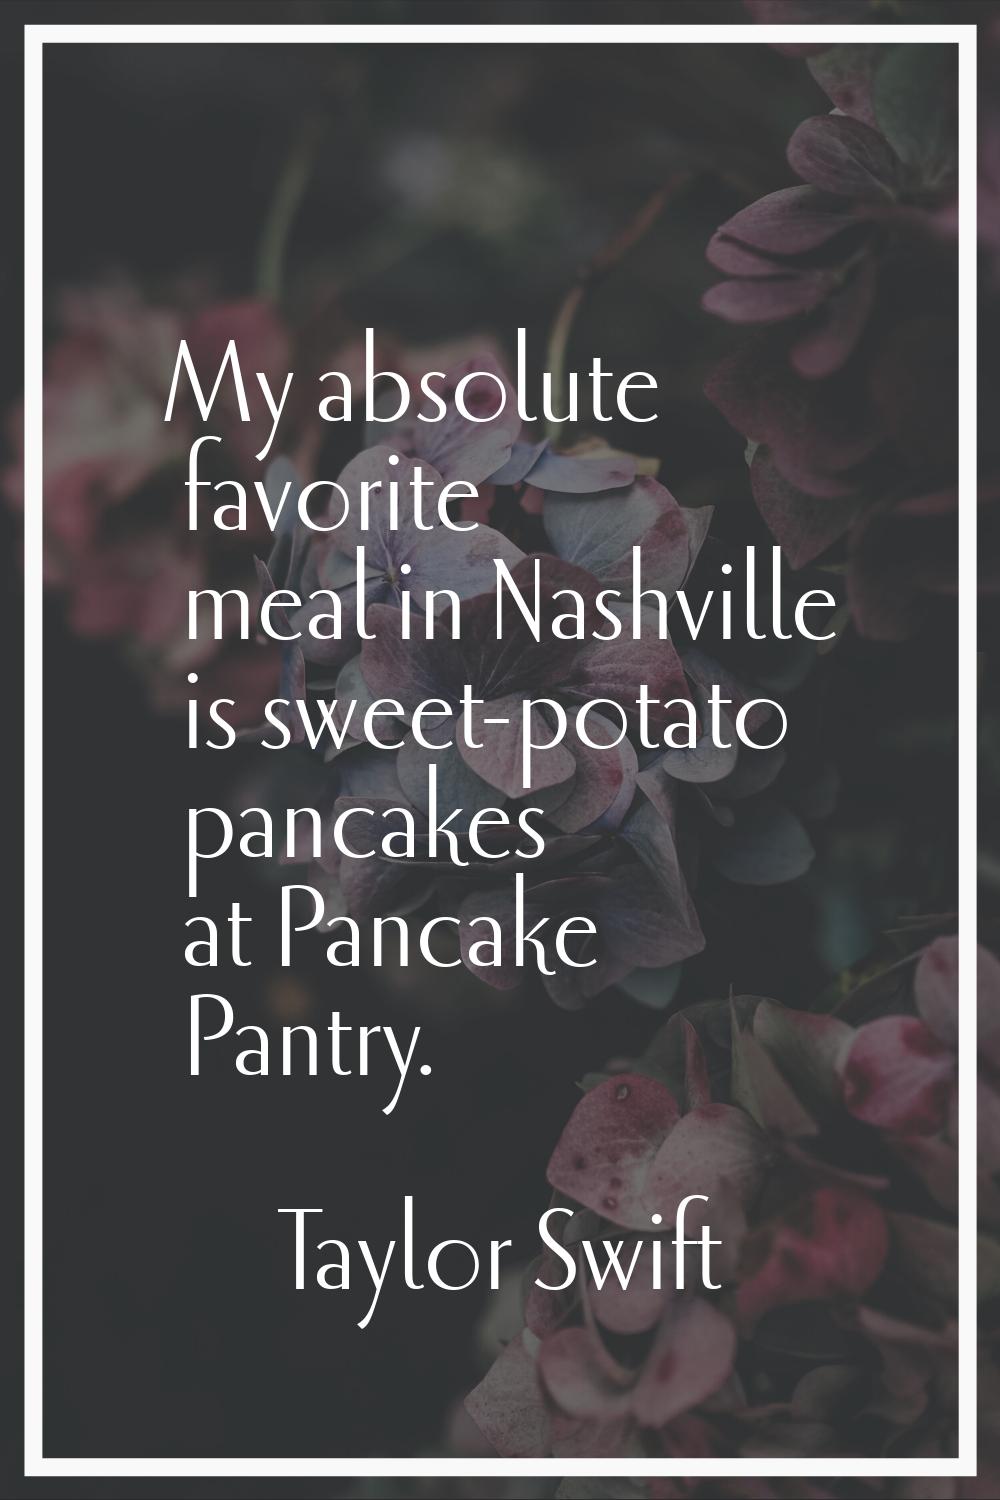 My absolute favorite meal in Nashville is sweet-potato pancakes at Pancake Pantry.